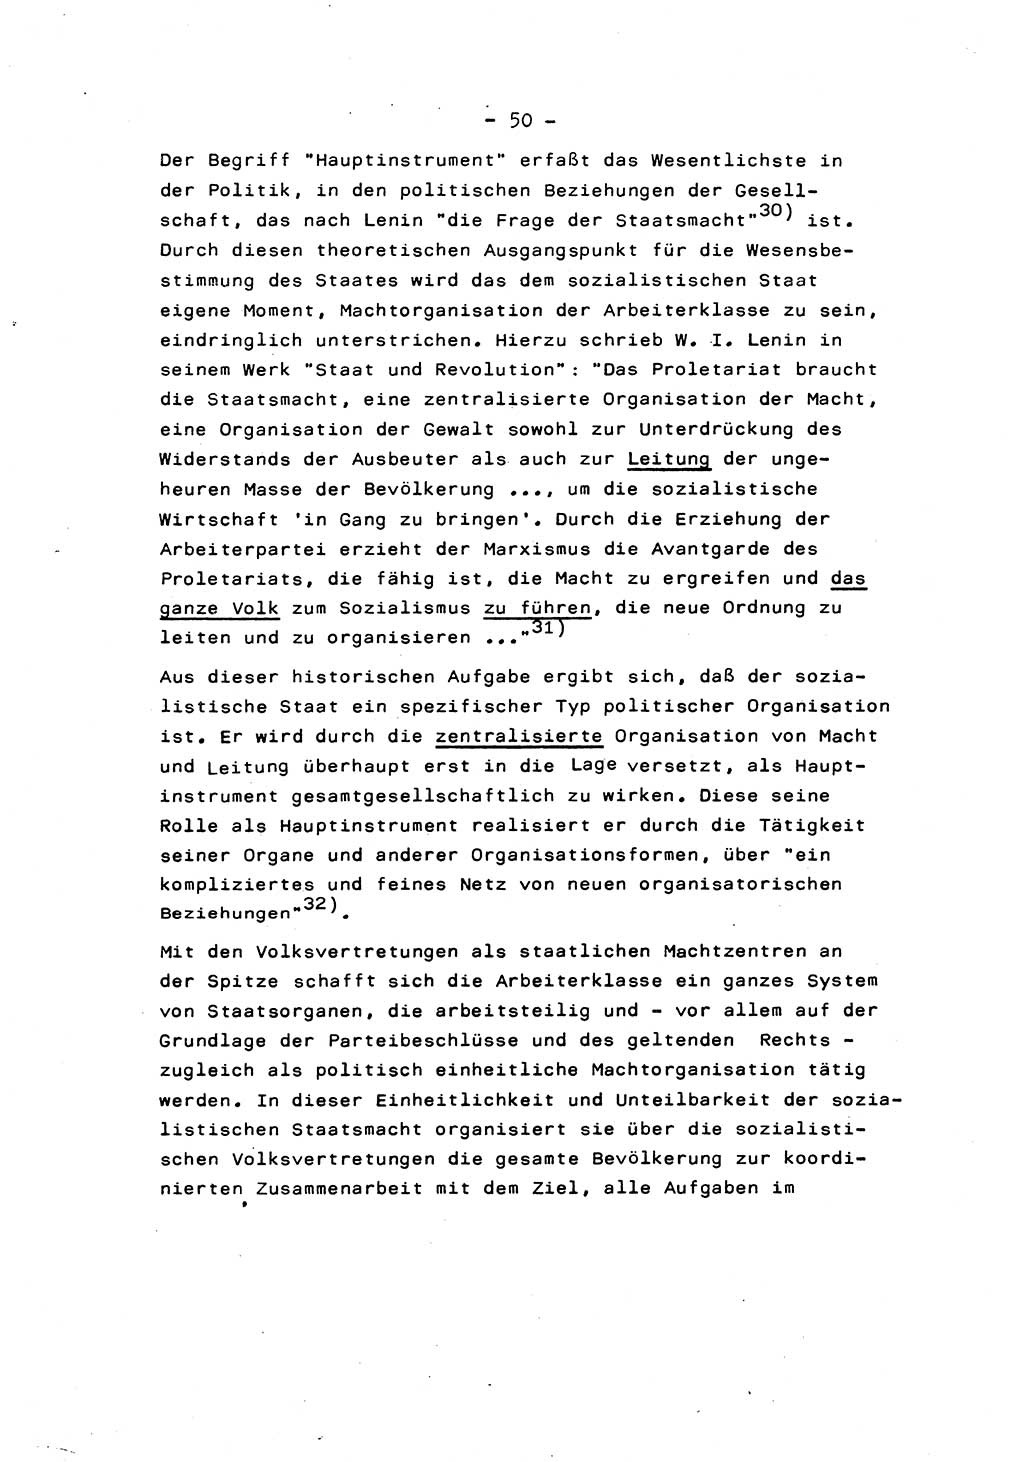 Marxistisch-leninistische Staats- und Rechtstheorie [Deutsche Demokratische Republik (DDR)] 1975, Seite 50 (ML St.-R.-Th. DDR 1975, S. 50)